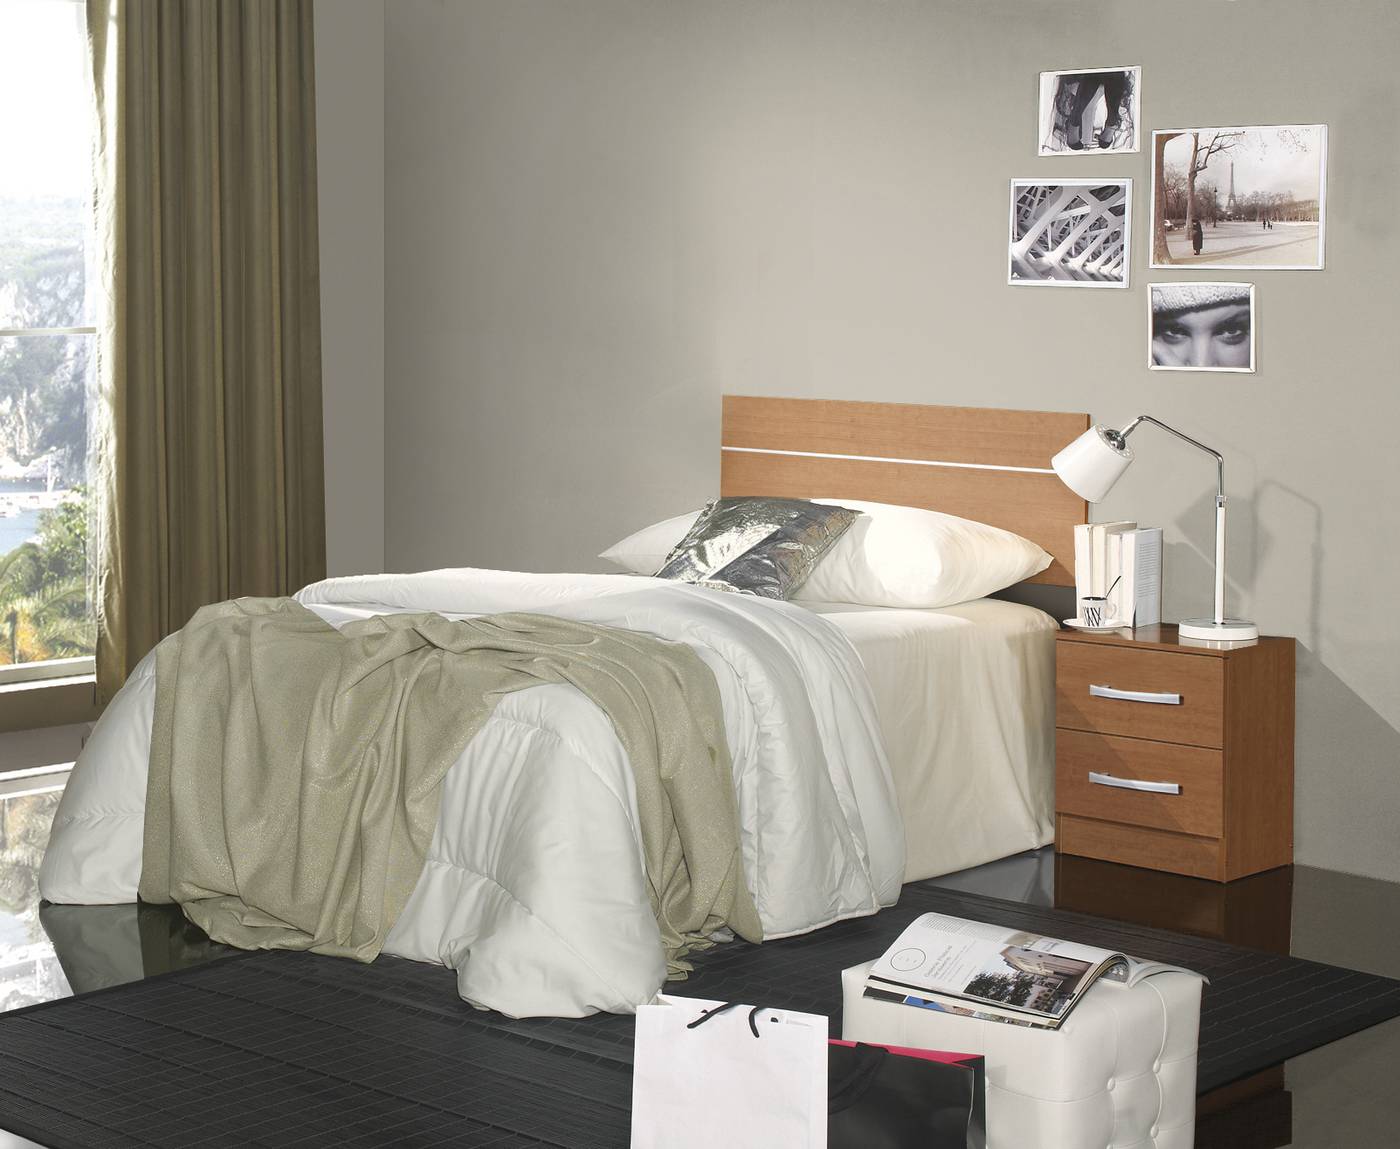 Galán de noche para dormitorio de estilo clásico | Muebles Valencia®  Acabado Cerezo - Pulimento Grupo2